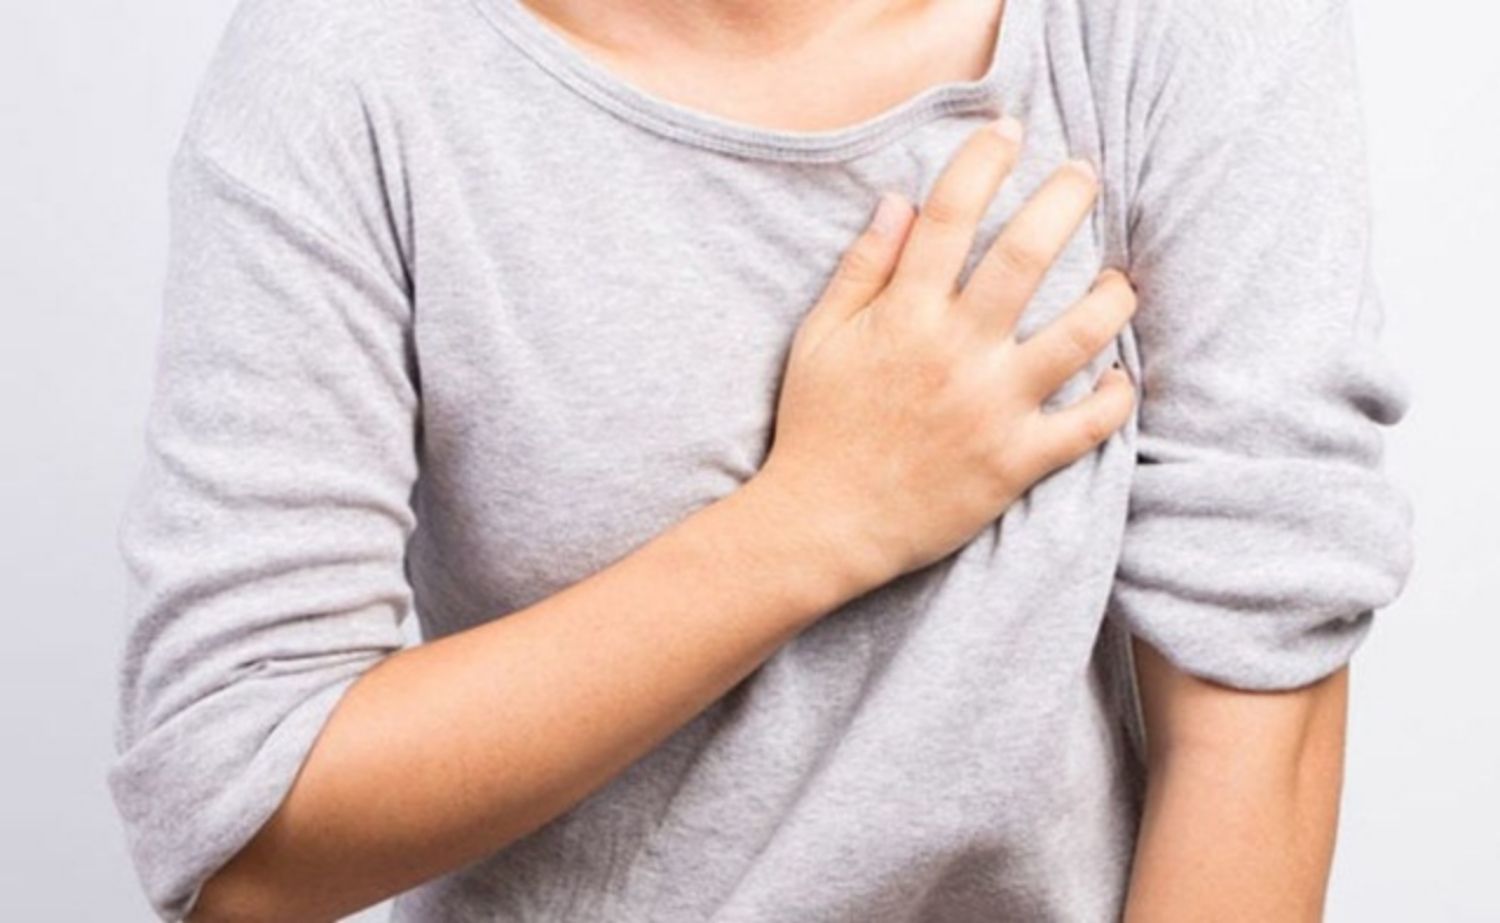 Có những biện pháp tự điều trị nào hiệu quả cho đau ngực khi đến tháng?
